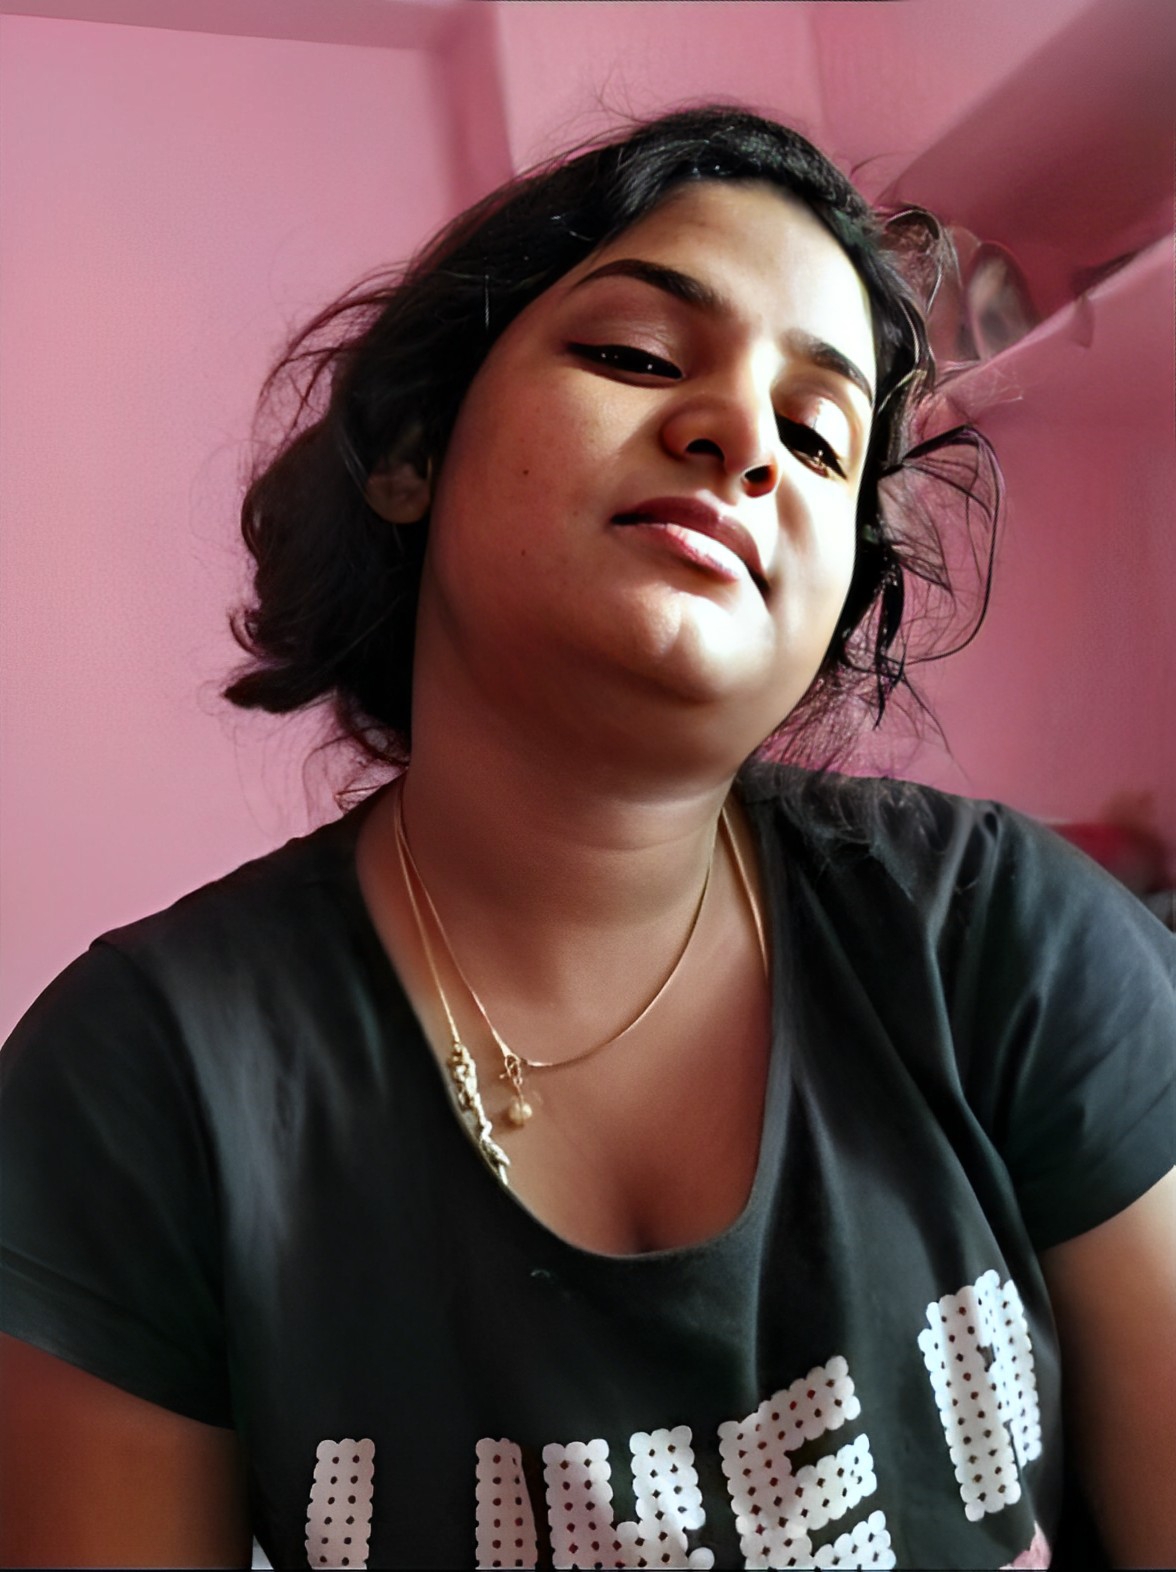 Tamil beautiful girl